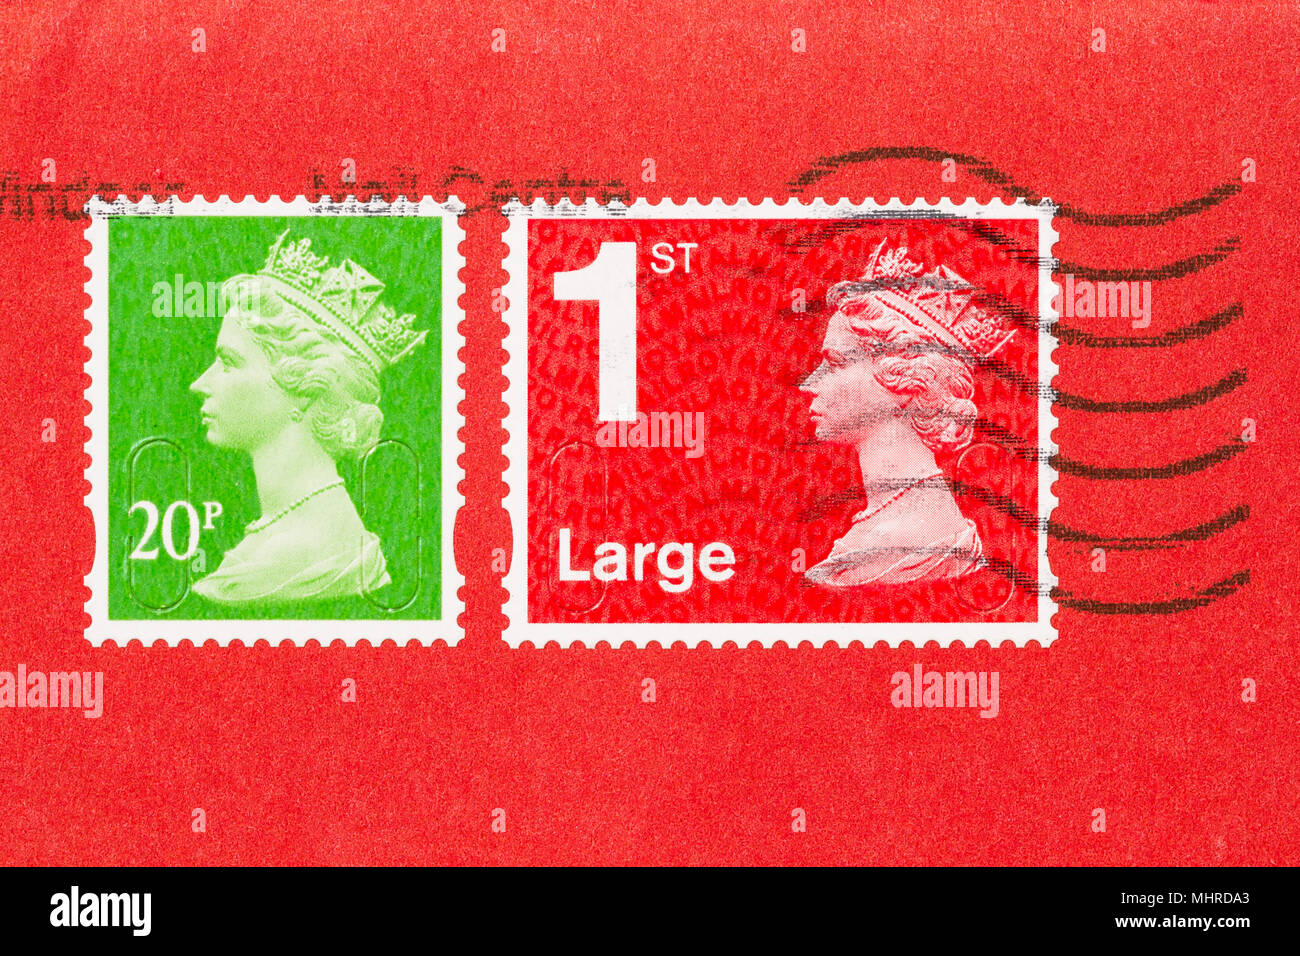 Nahaufnahme von einem Umschlag mit 2 Stempel, eine rote, eine grüne, von Königin Elisabeth II. Großbritannien Briefmarke auf rotem Papier. Stockfoto